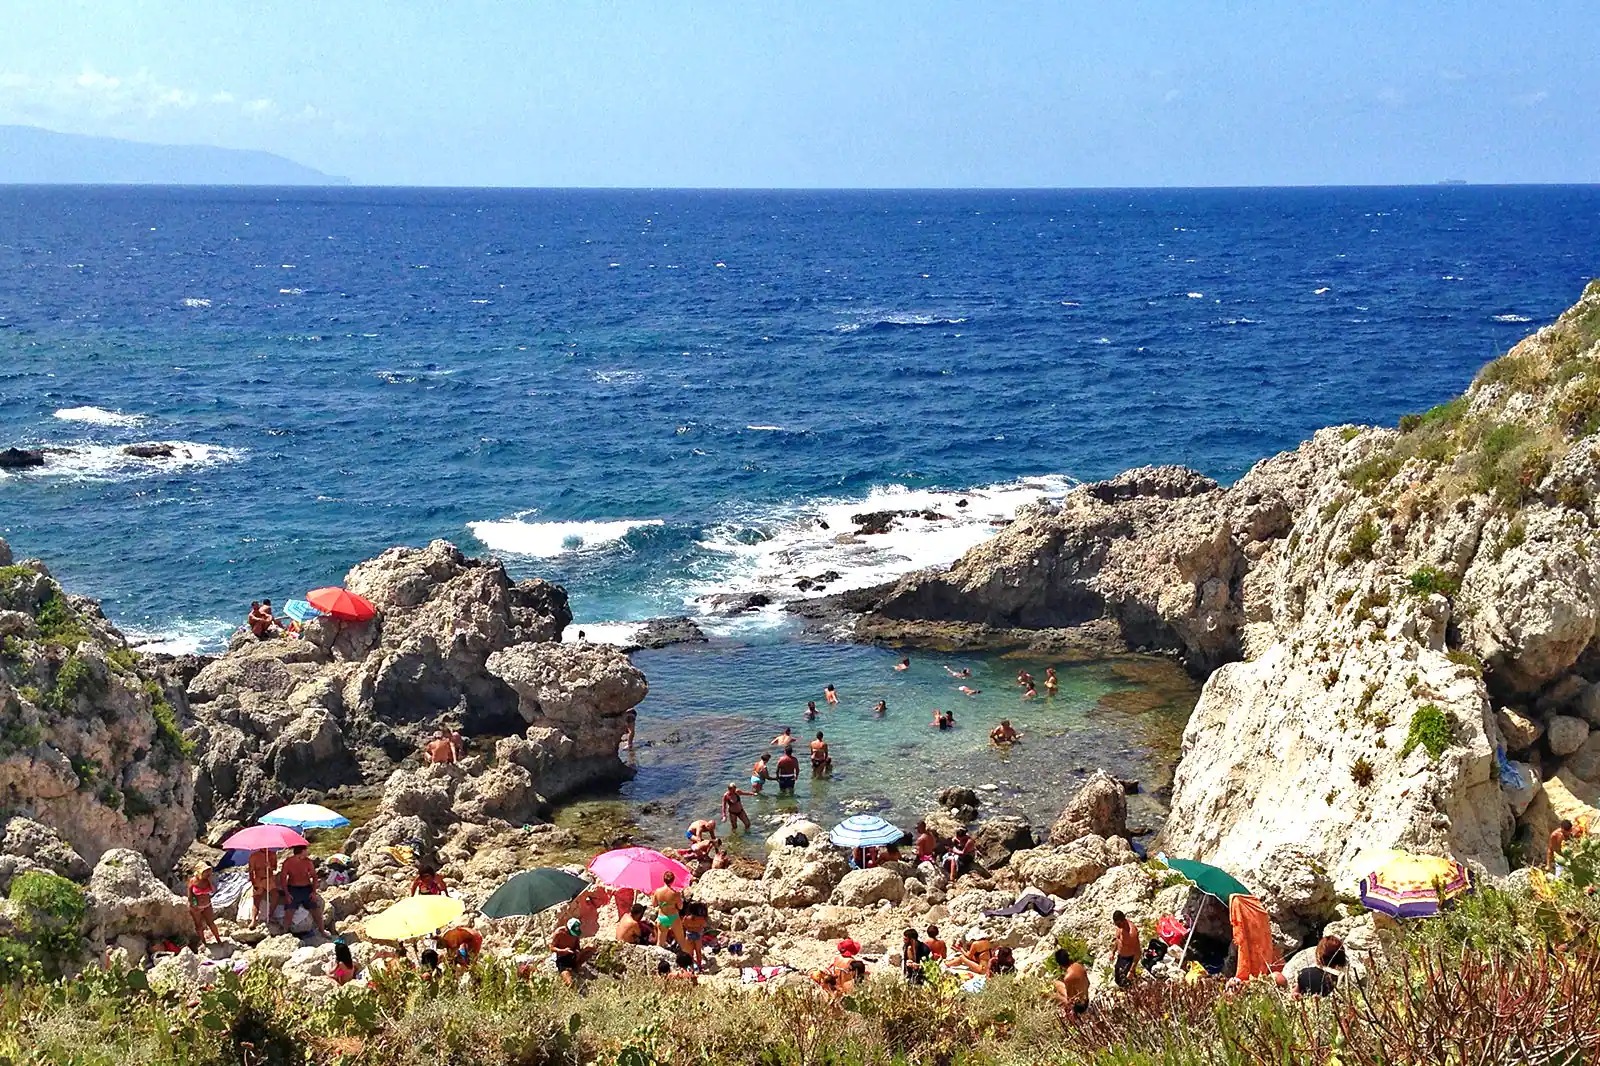 Plages Capri : Piscina di Venere